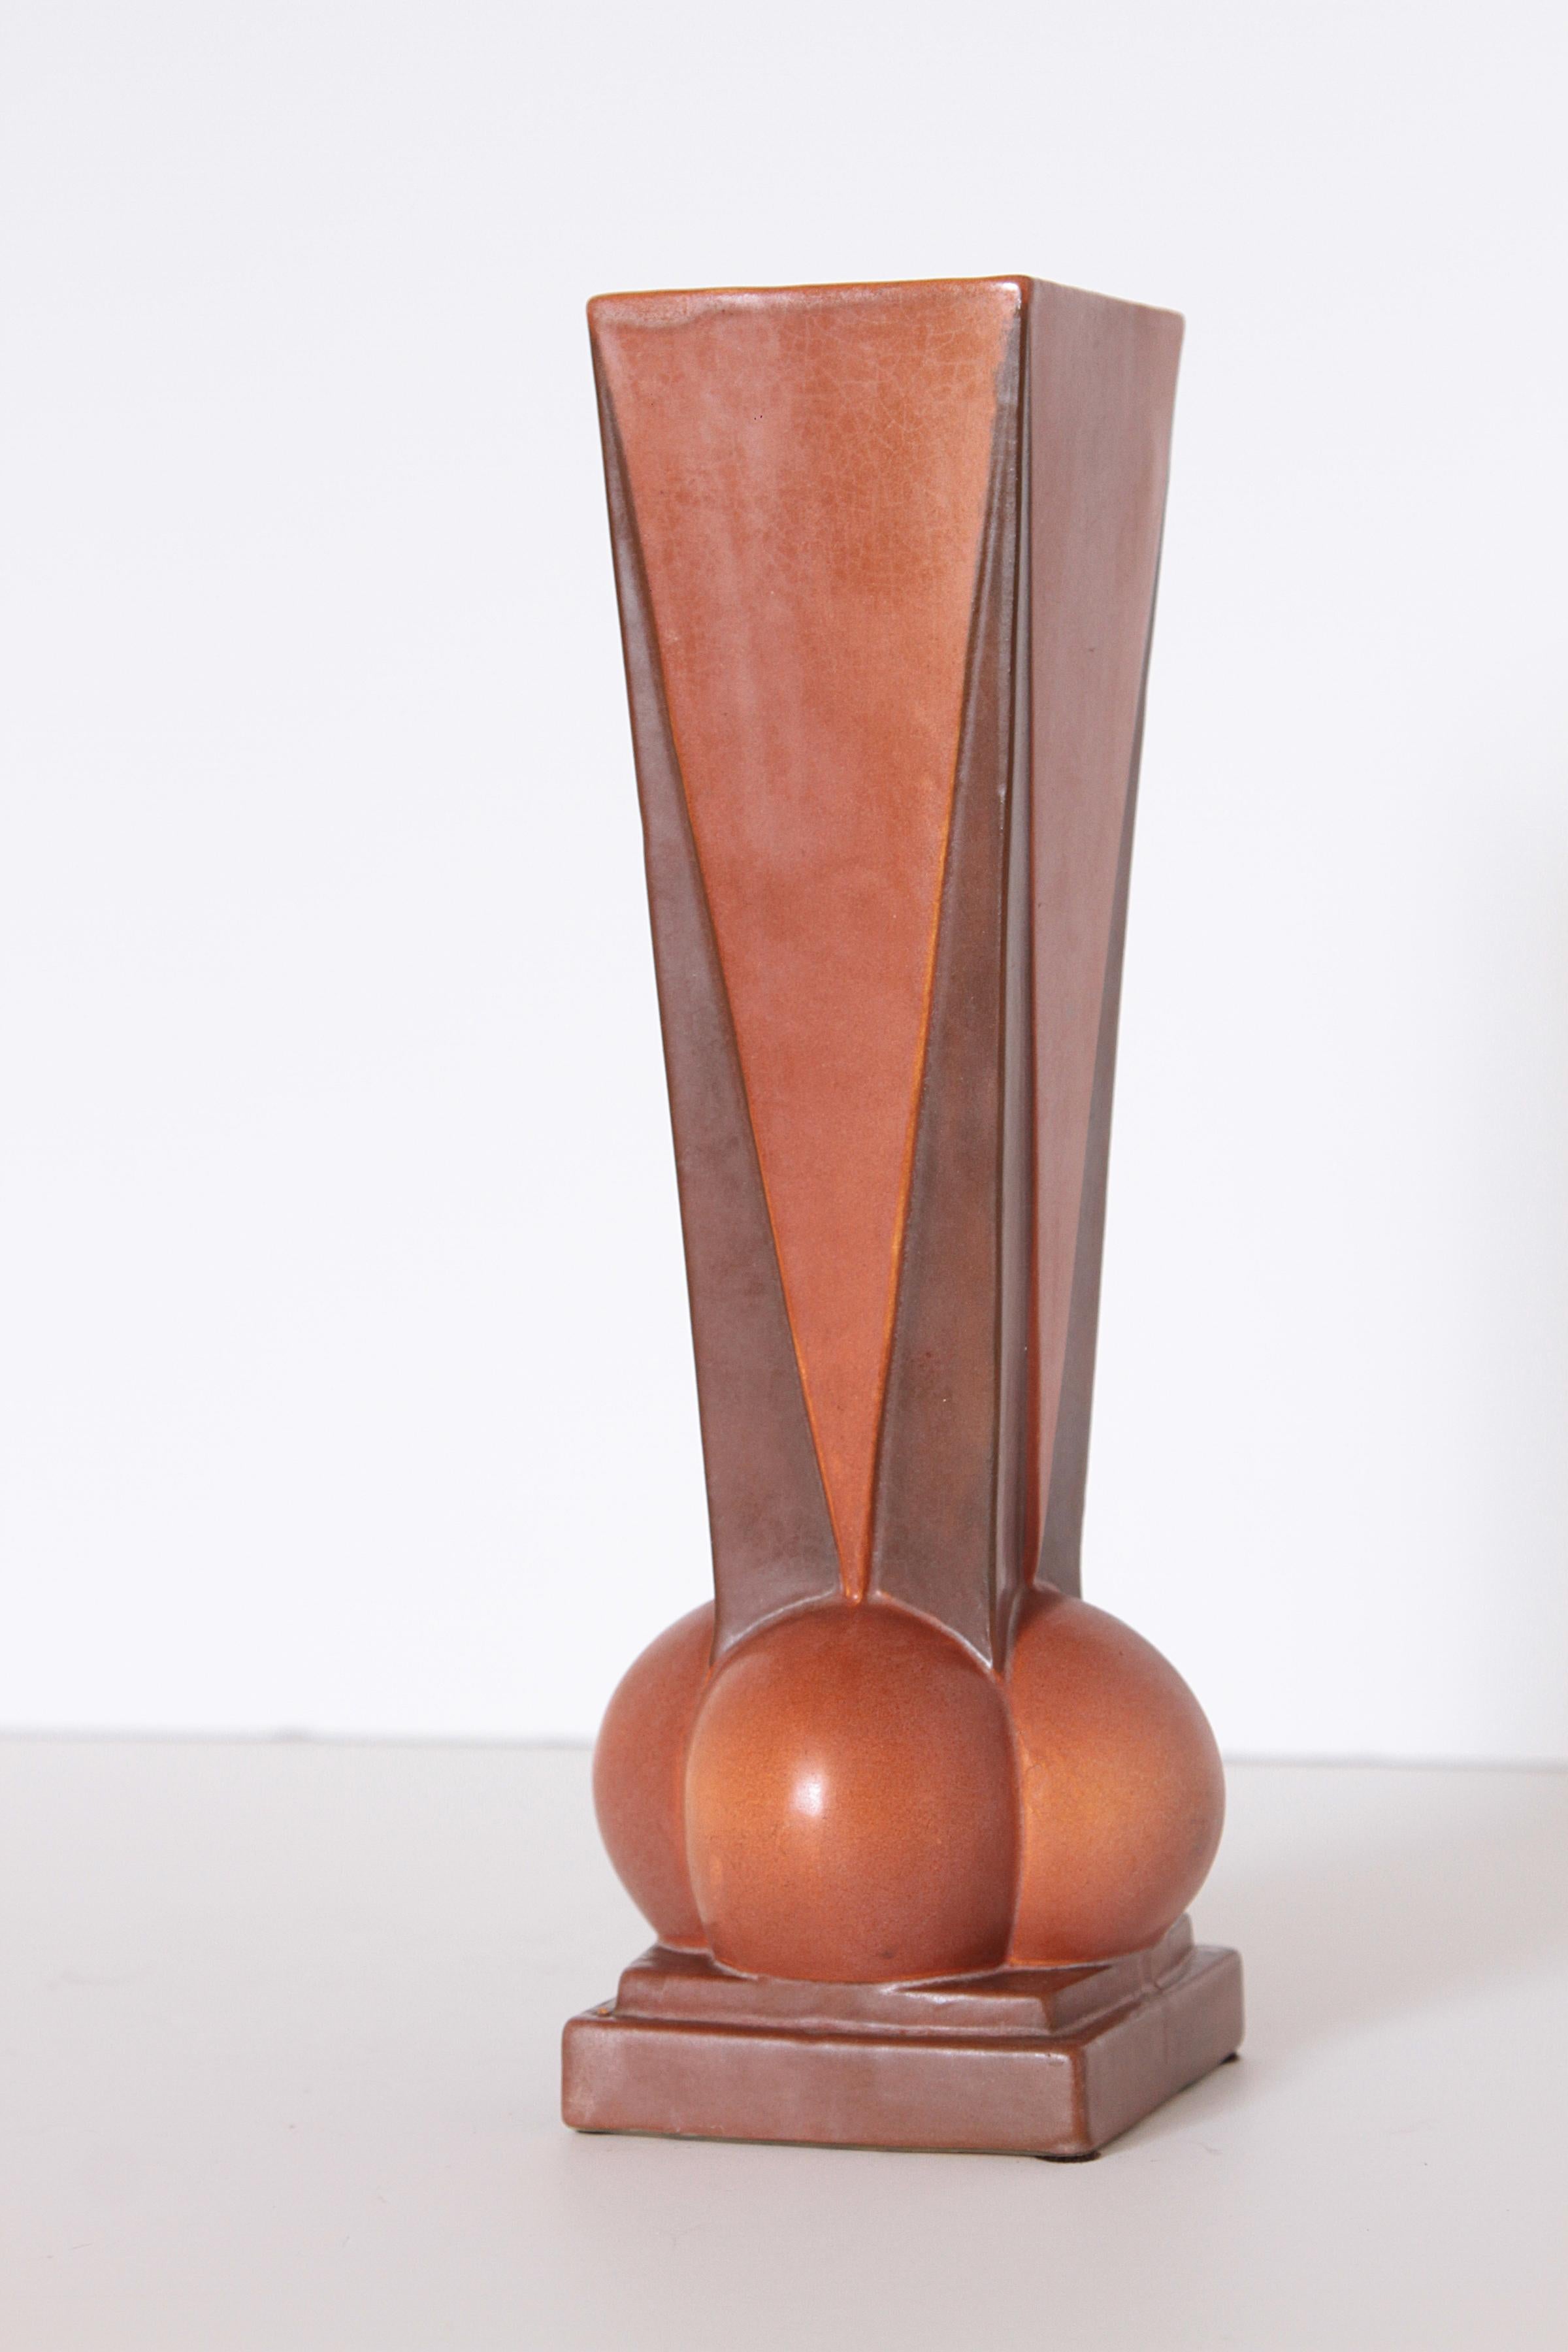 Glazed Art Deco Roseville Futura Four-Ball Ceramic Vase by Frank Ferrell   For Sale